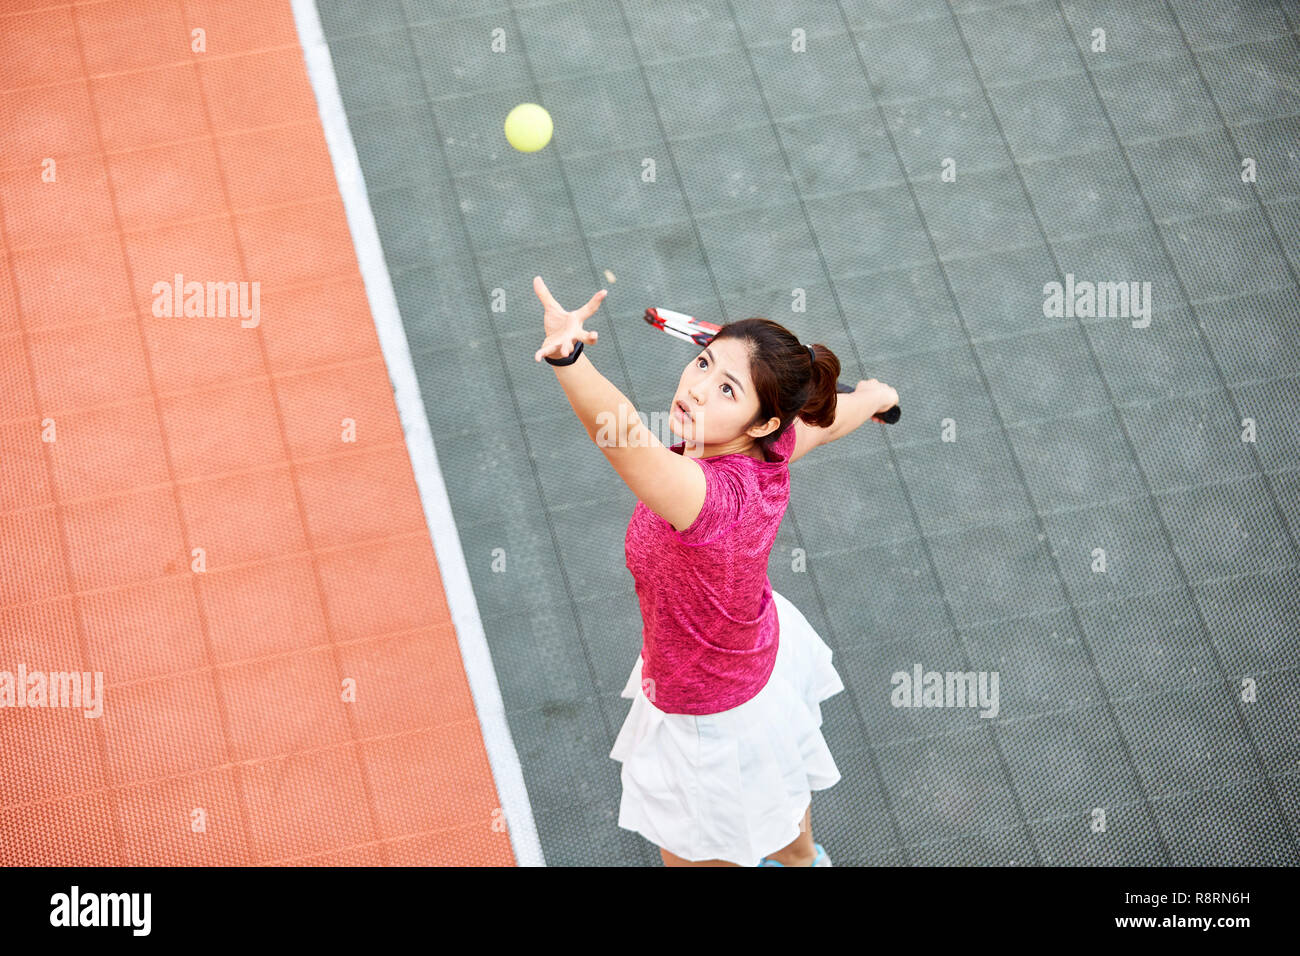 Young Asian tennis player servant dans match Banque D'Images